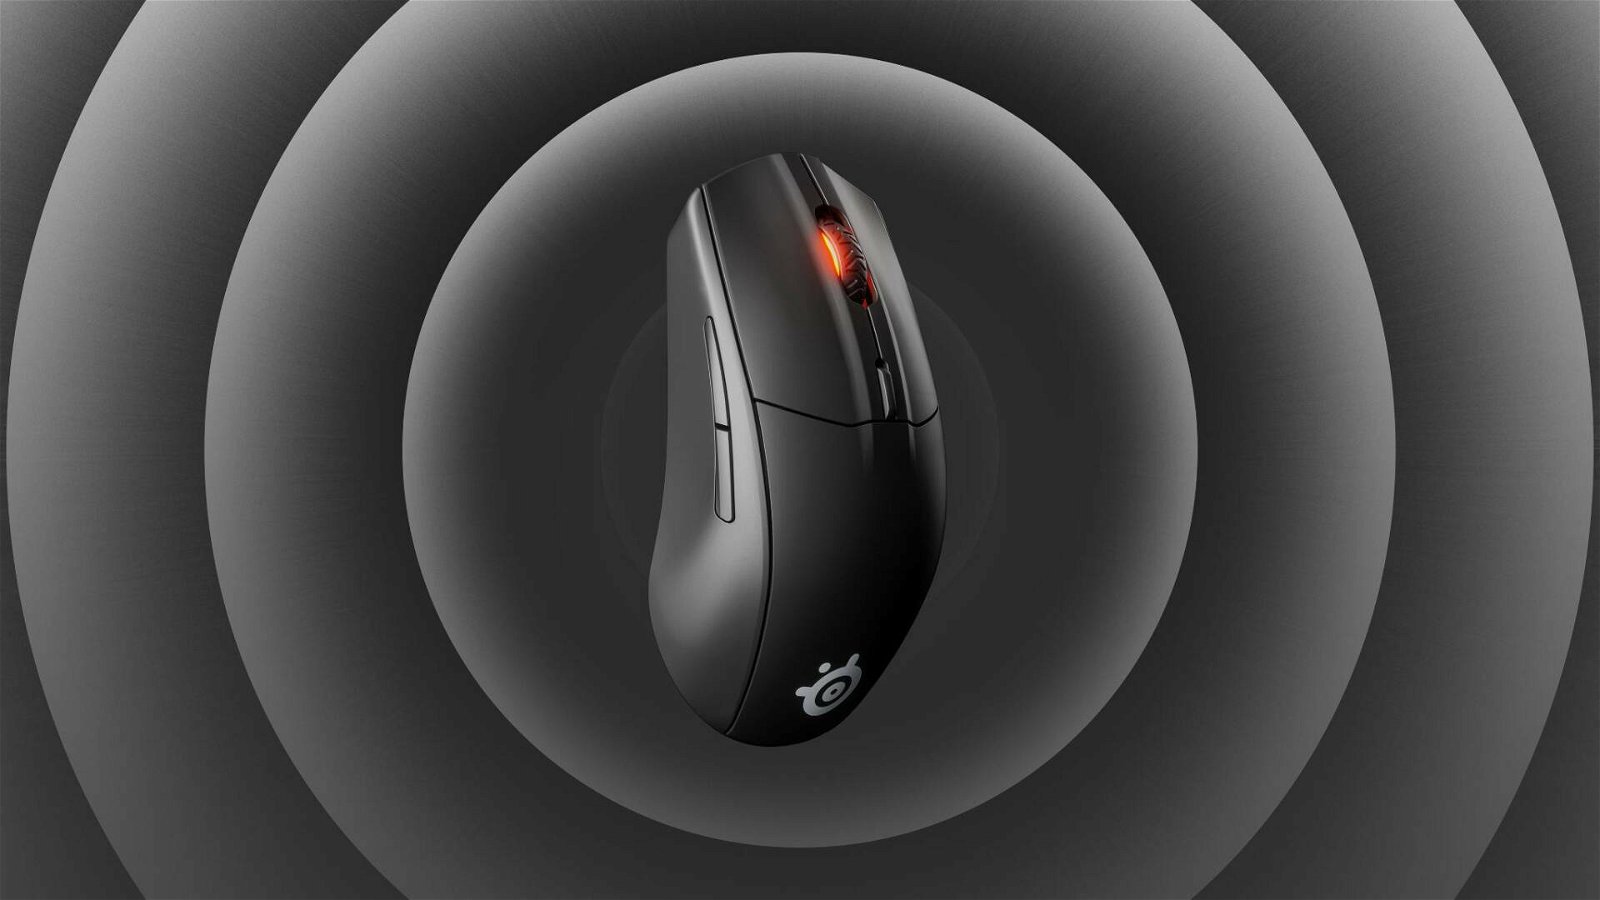 Immagine di SteelSeries 3 Rival, tra i migliori mouse gaming wireless a soli 34€! AFFARE!